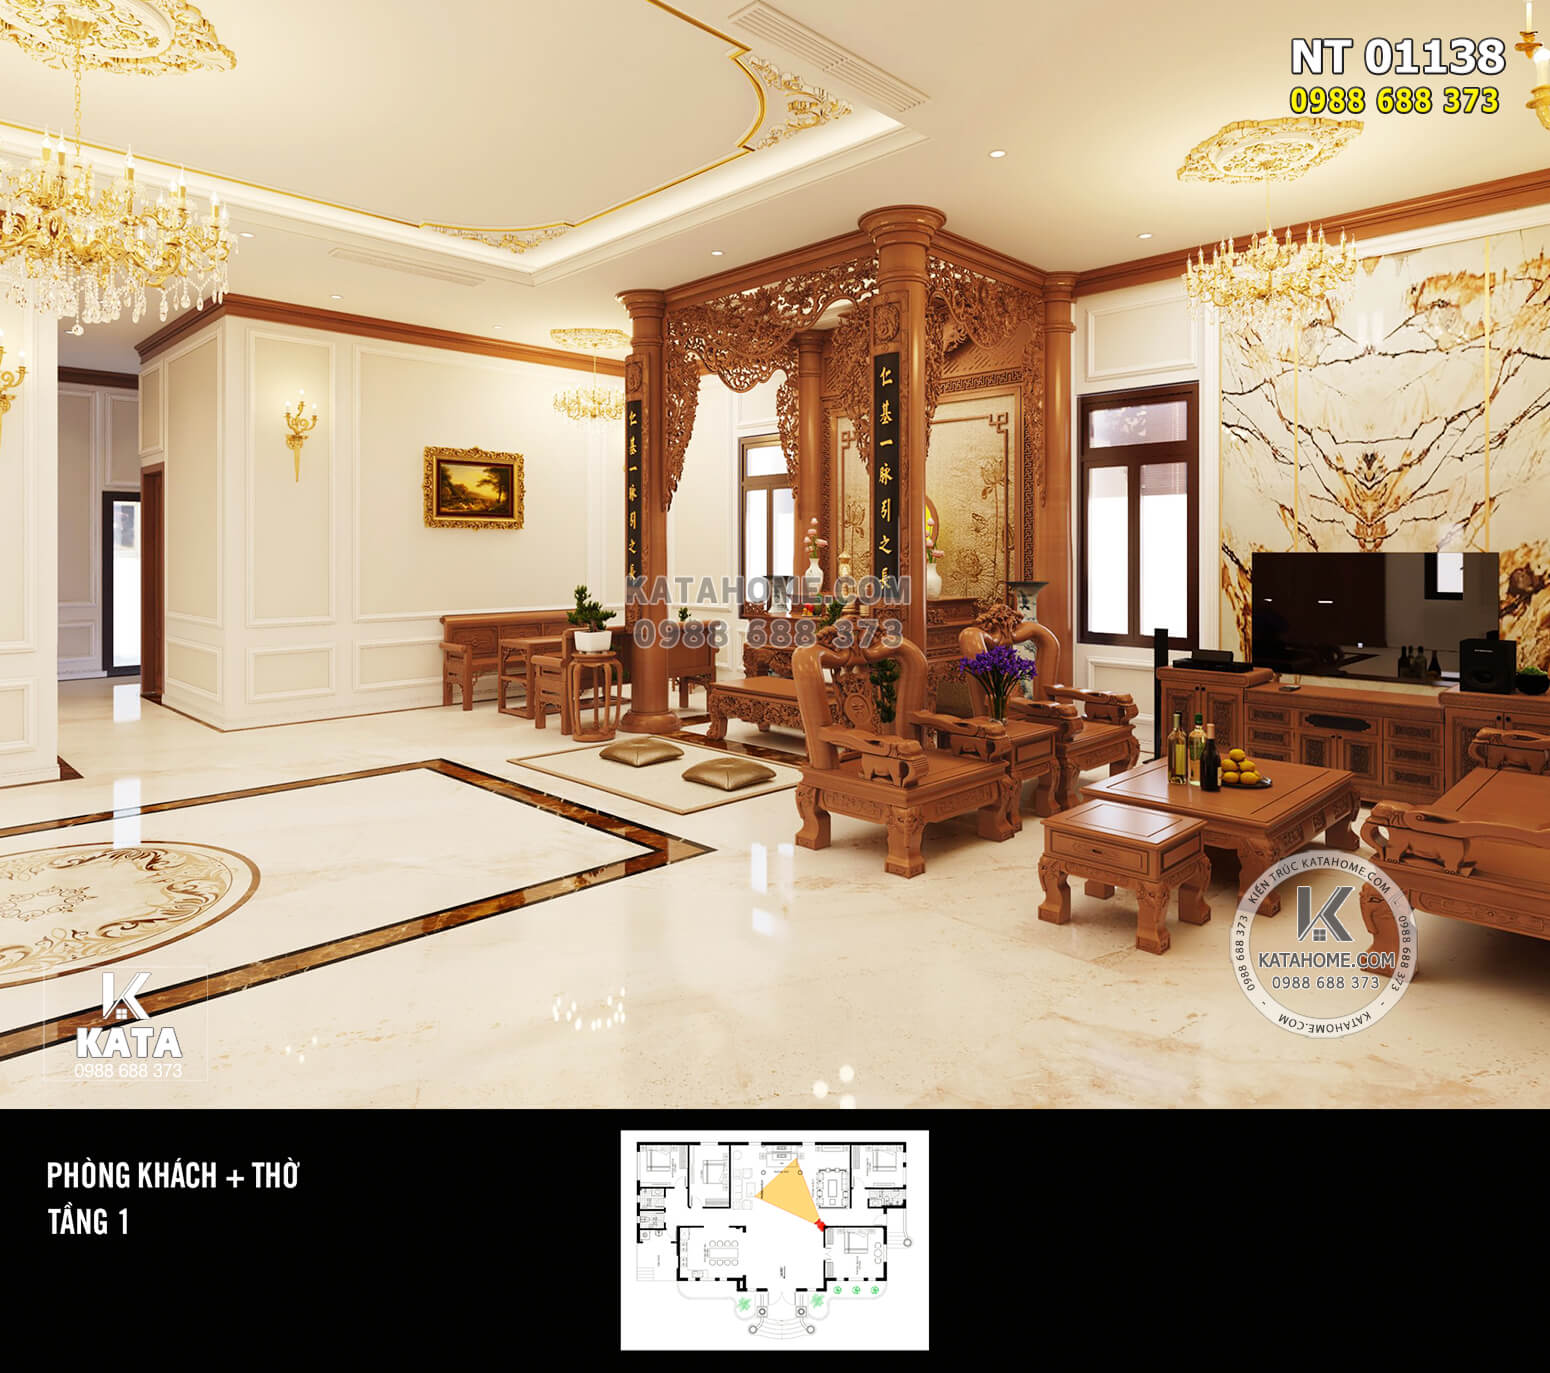 Đồ nội thất gỗ lim cao cấp kết hợp diện trang trí tân cổ điển mở ra một không gian sang trọng và đầm ấm